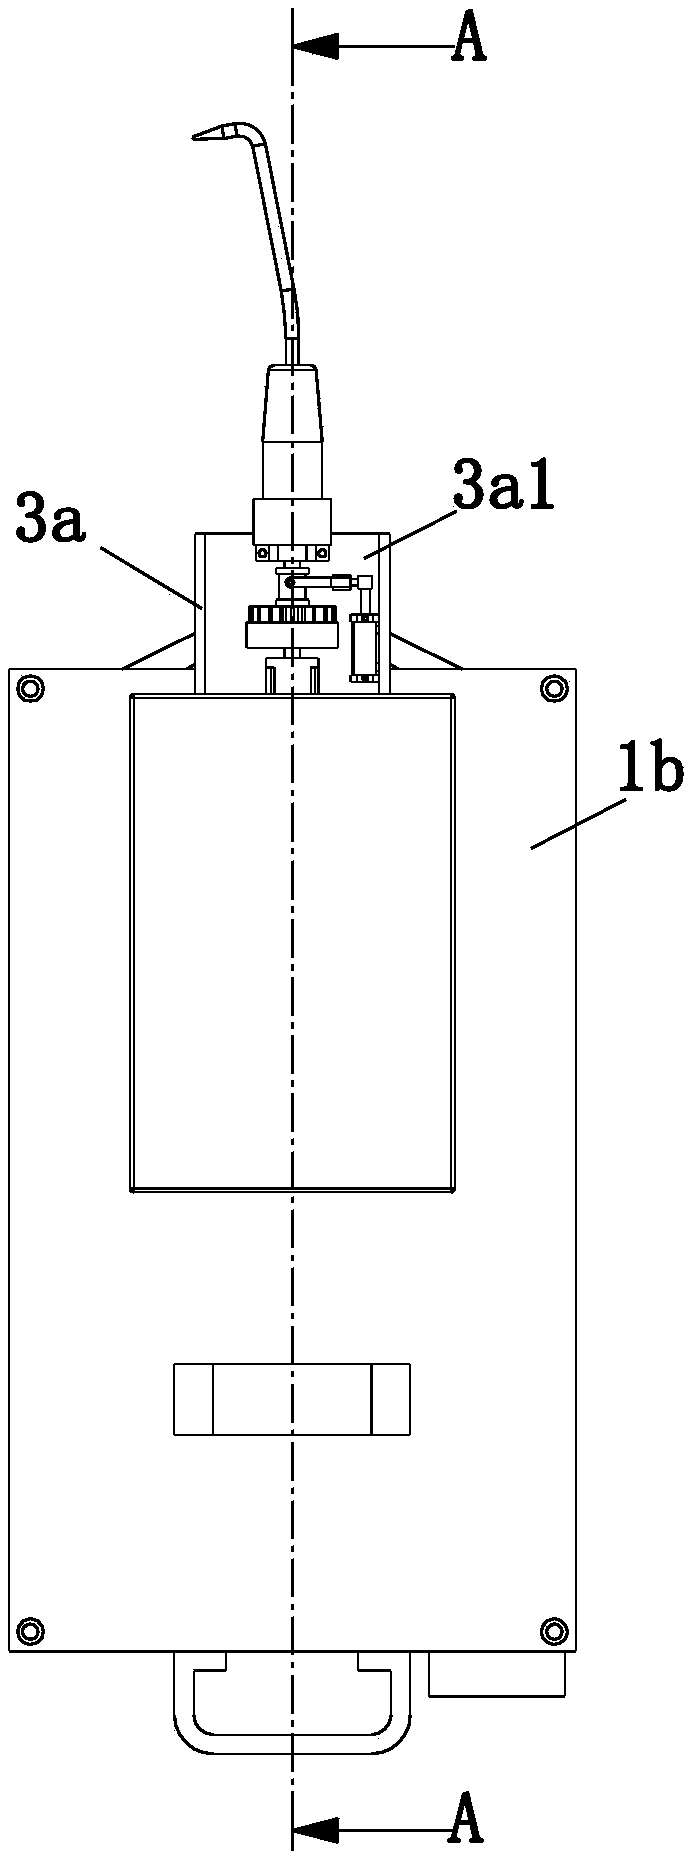 Working control method of multifunctional steel bar binding device